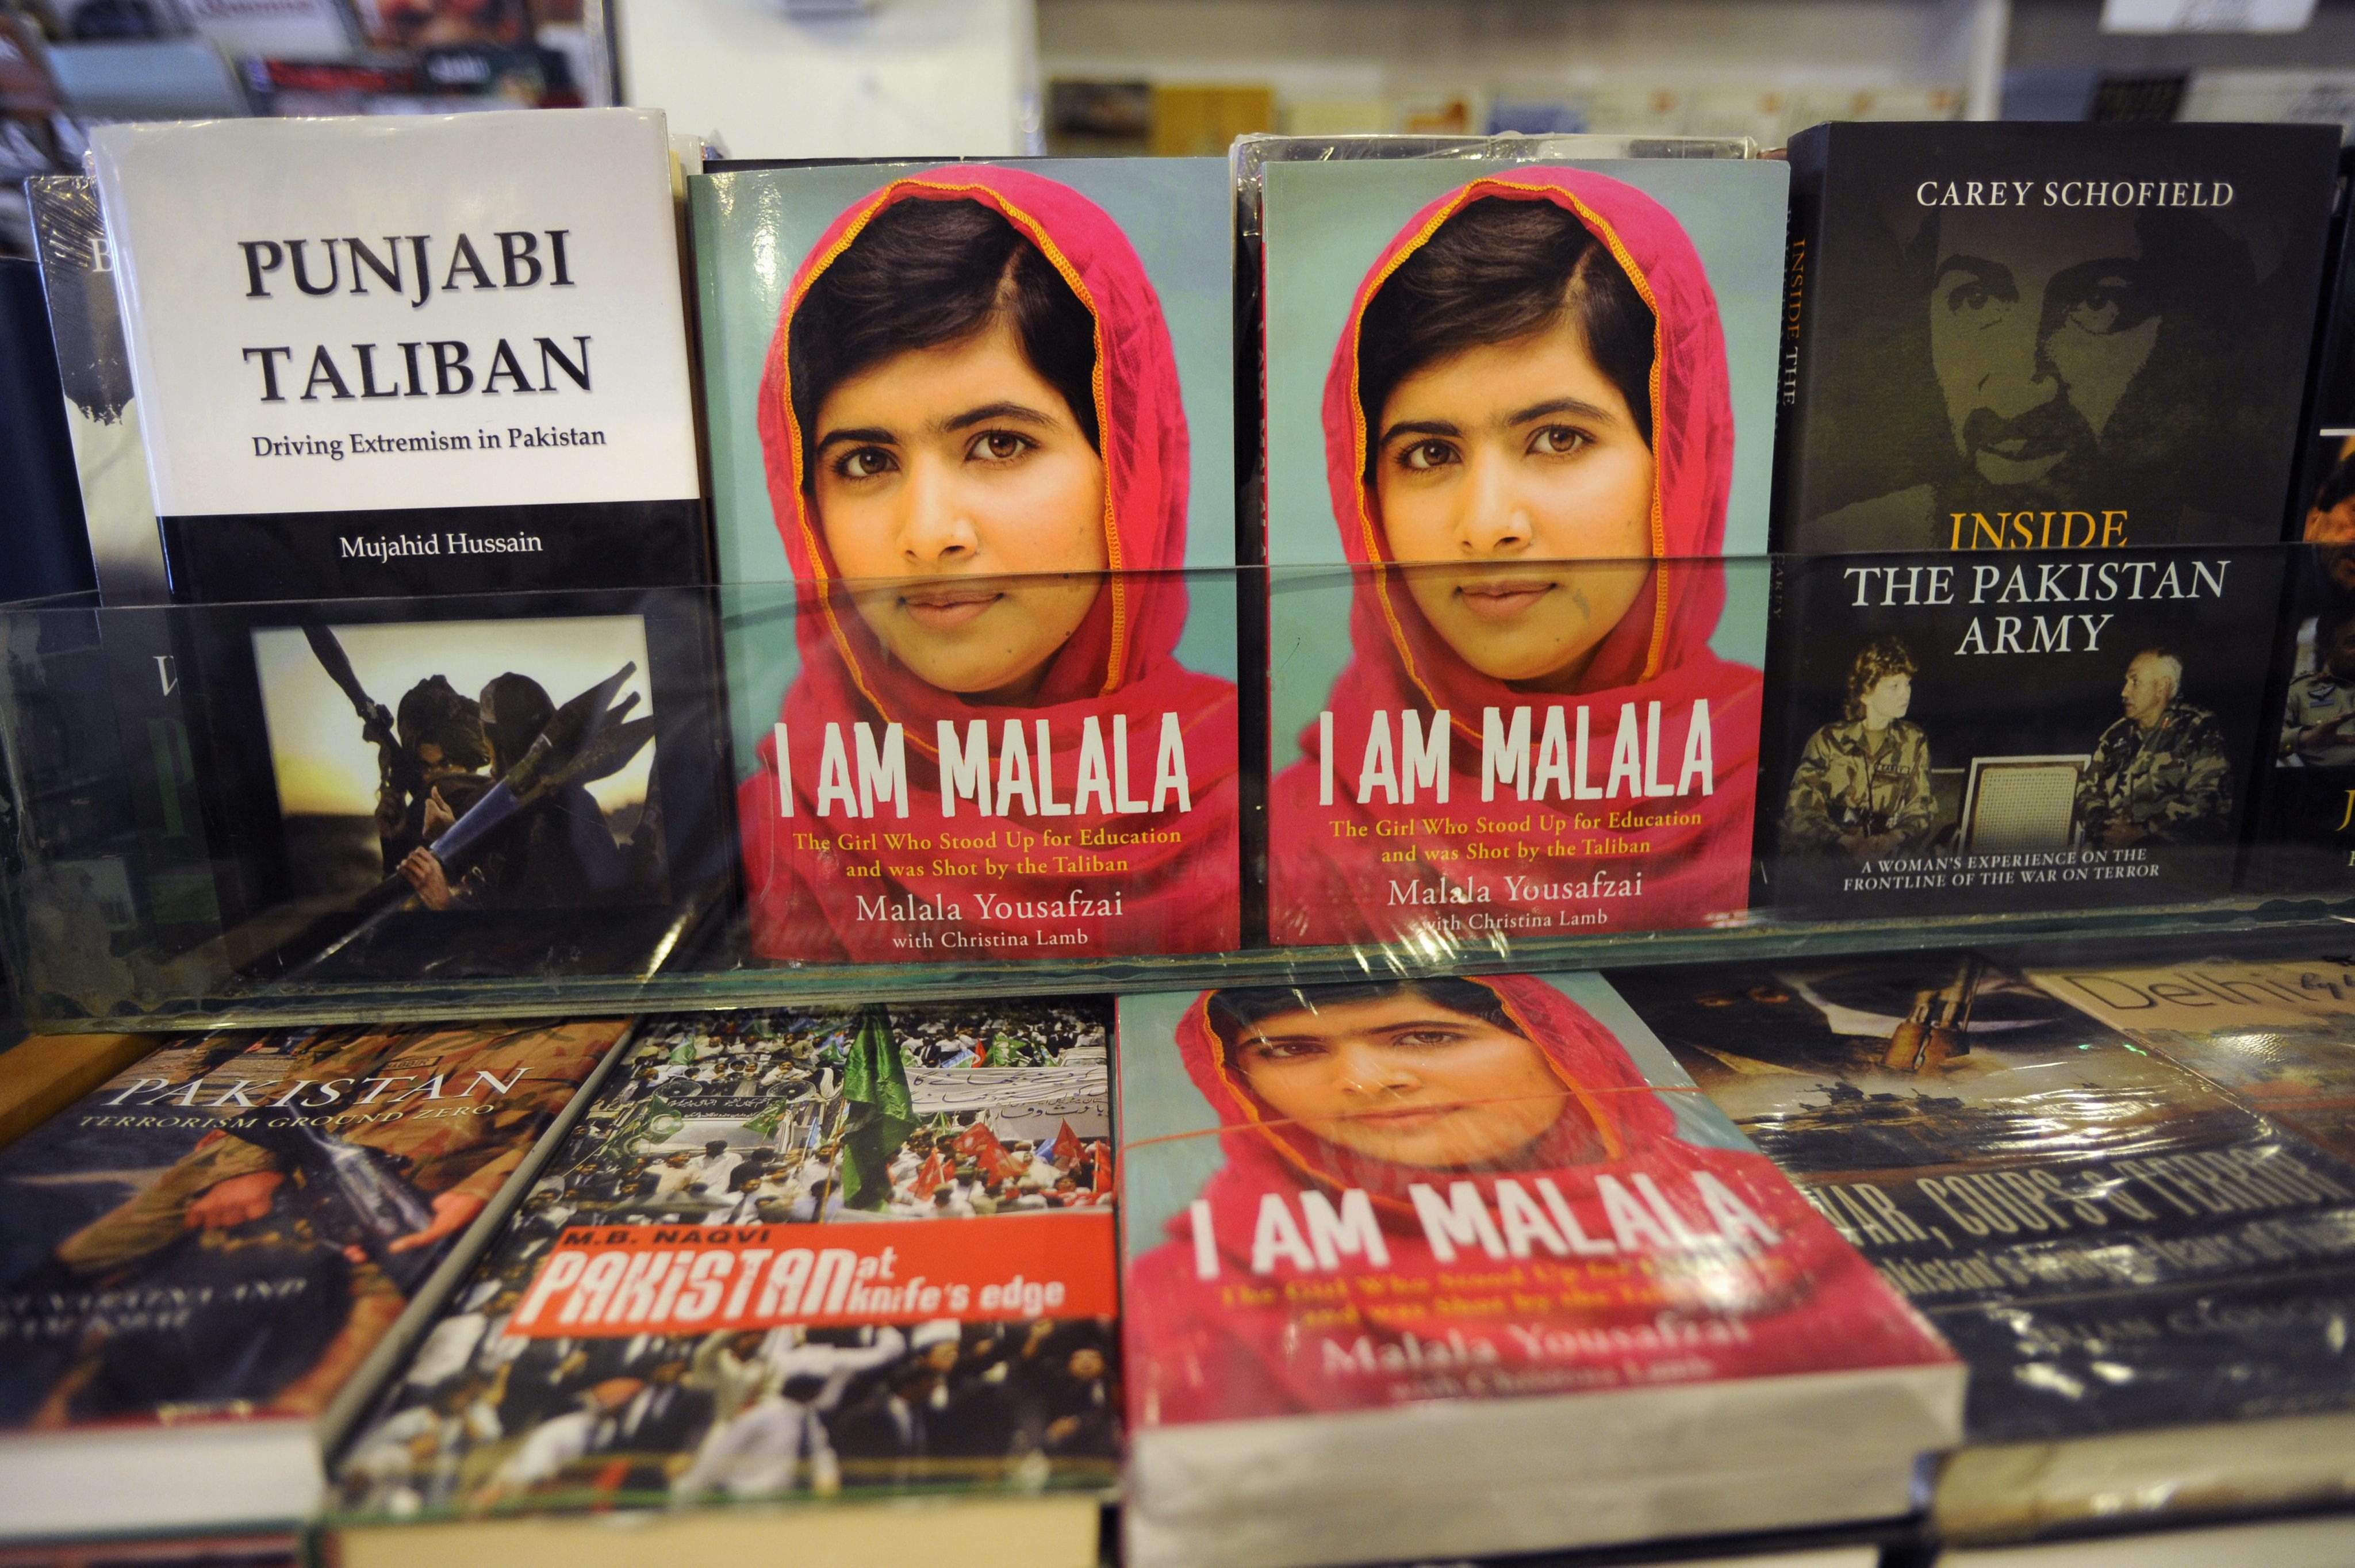 Στη Μαλάλα Γιουσαφζάι απονεμήθηκε το βραβείο Ζαχάρωφ